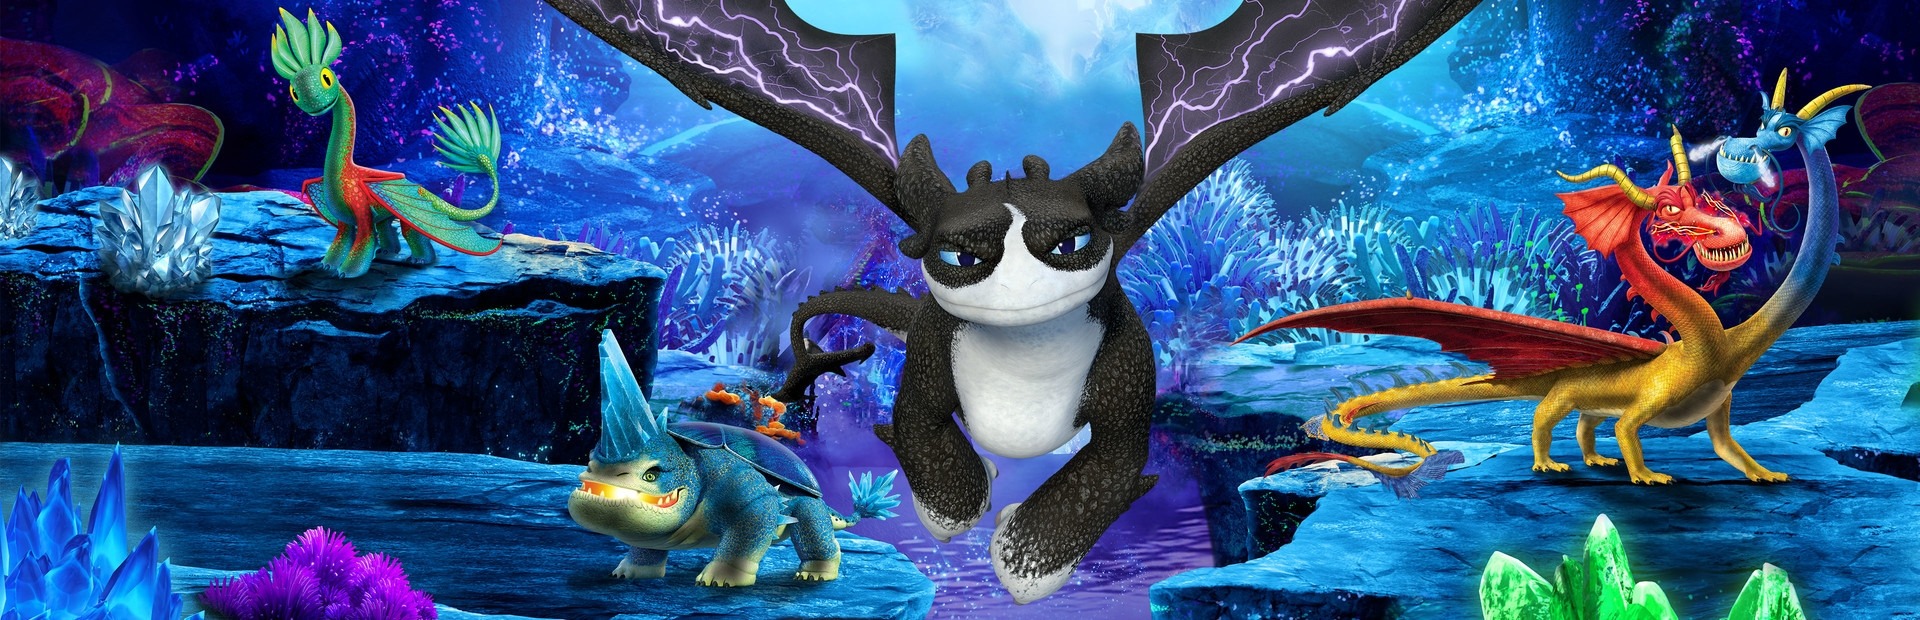 DreamWorks Dragones: Leyendas de los Nueve Reinos